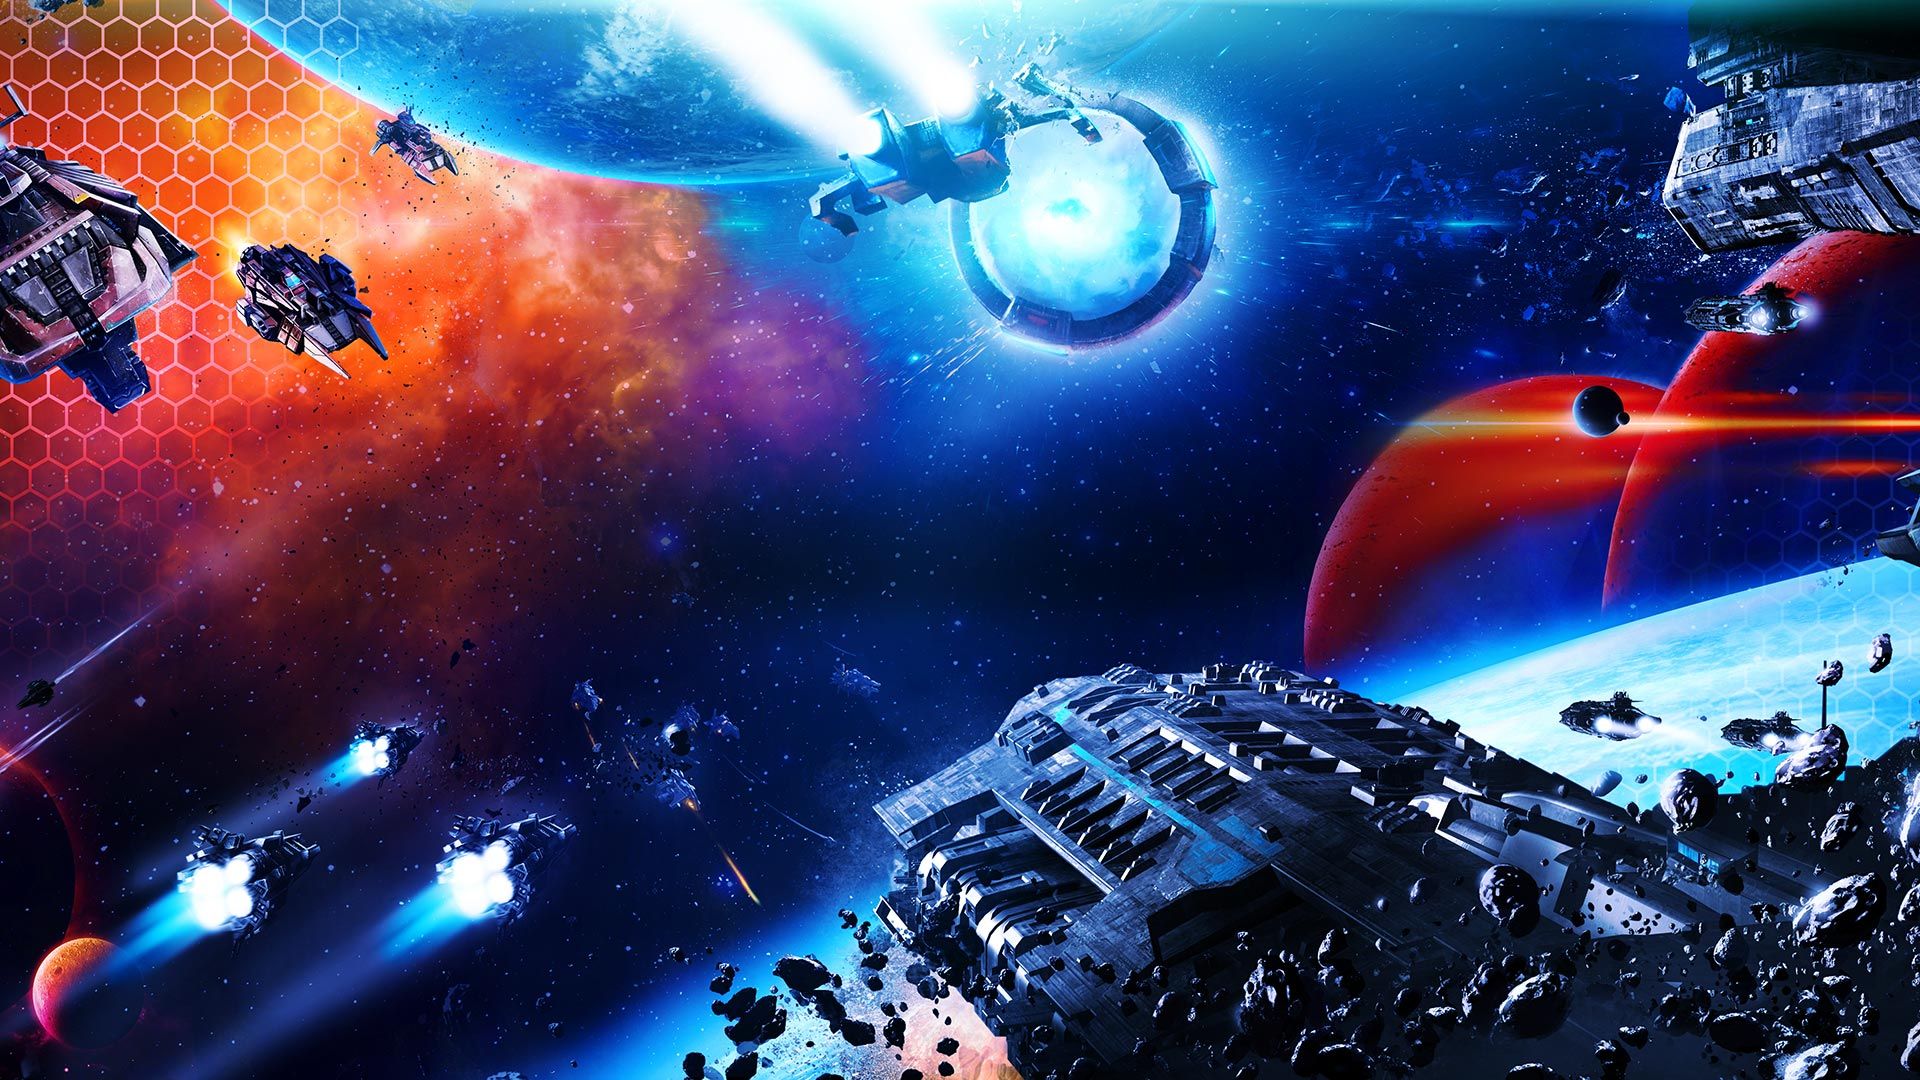 Sid Meier's Starships - 2K